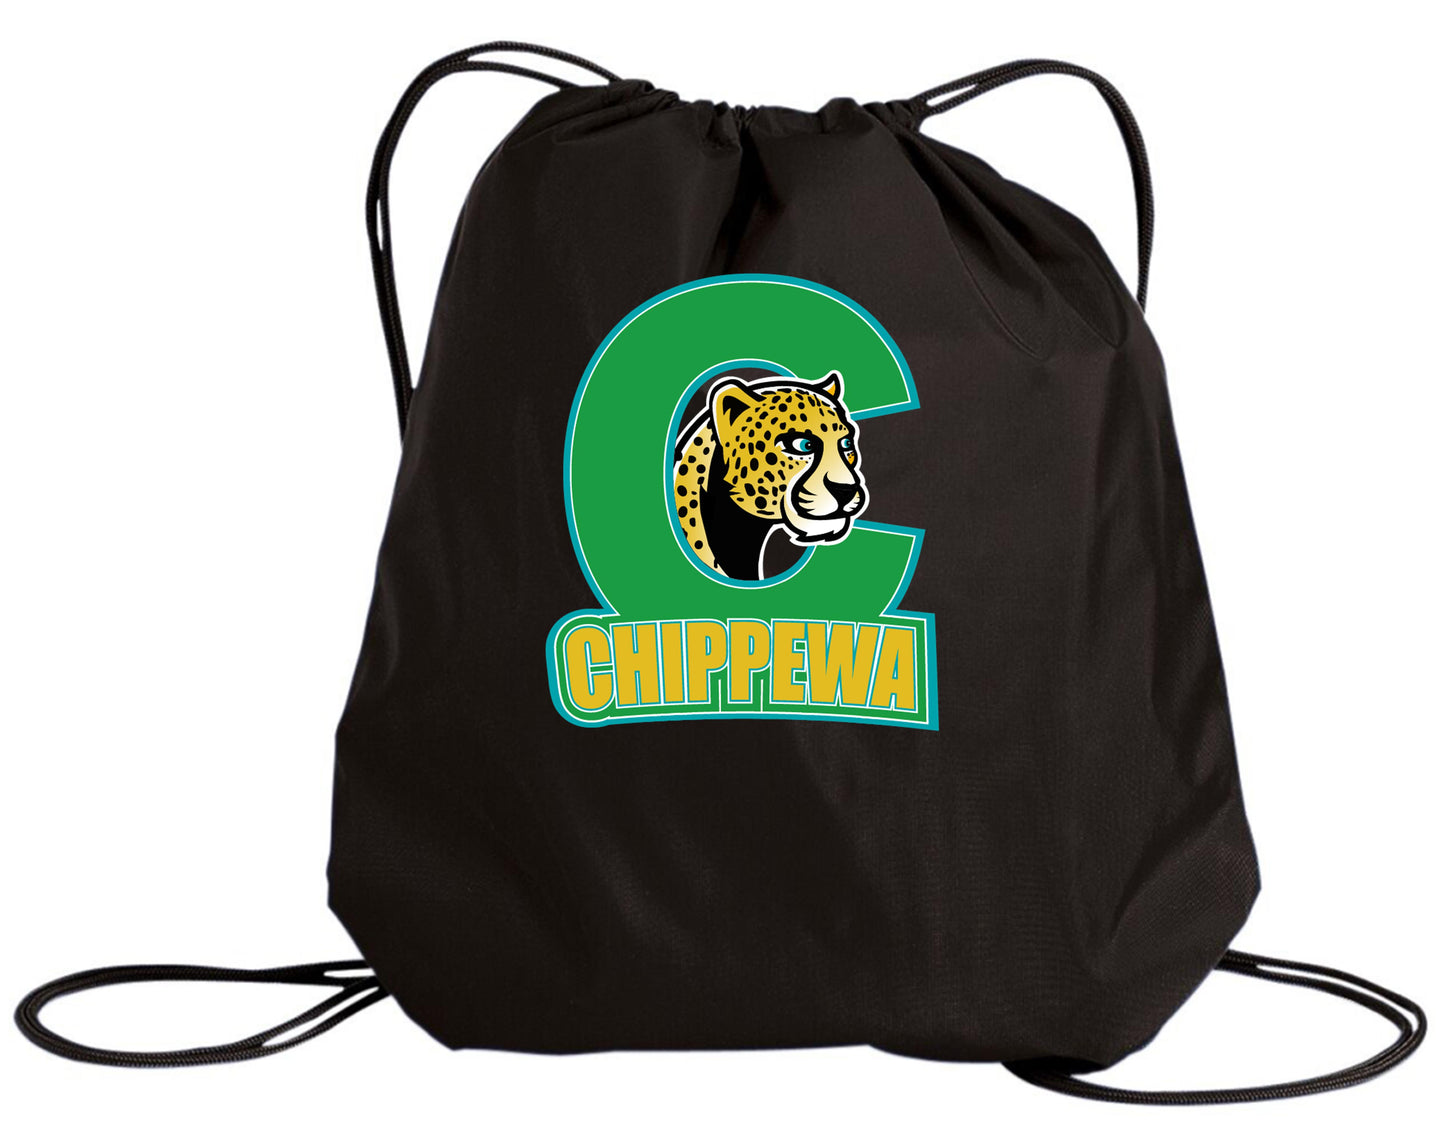 Chippewa Public School Cinch Bag